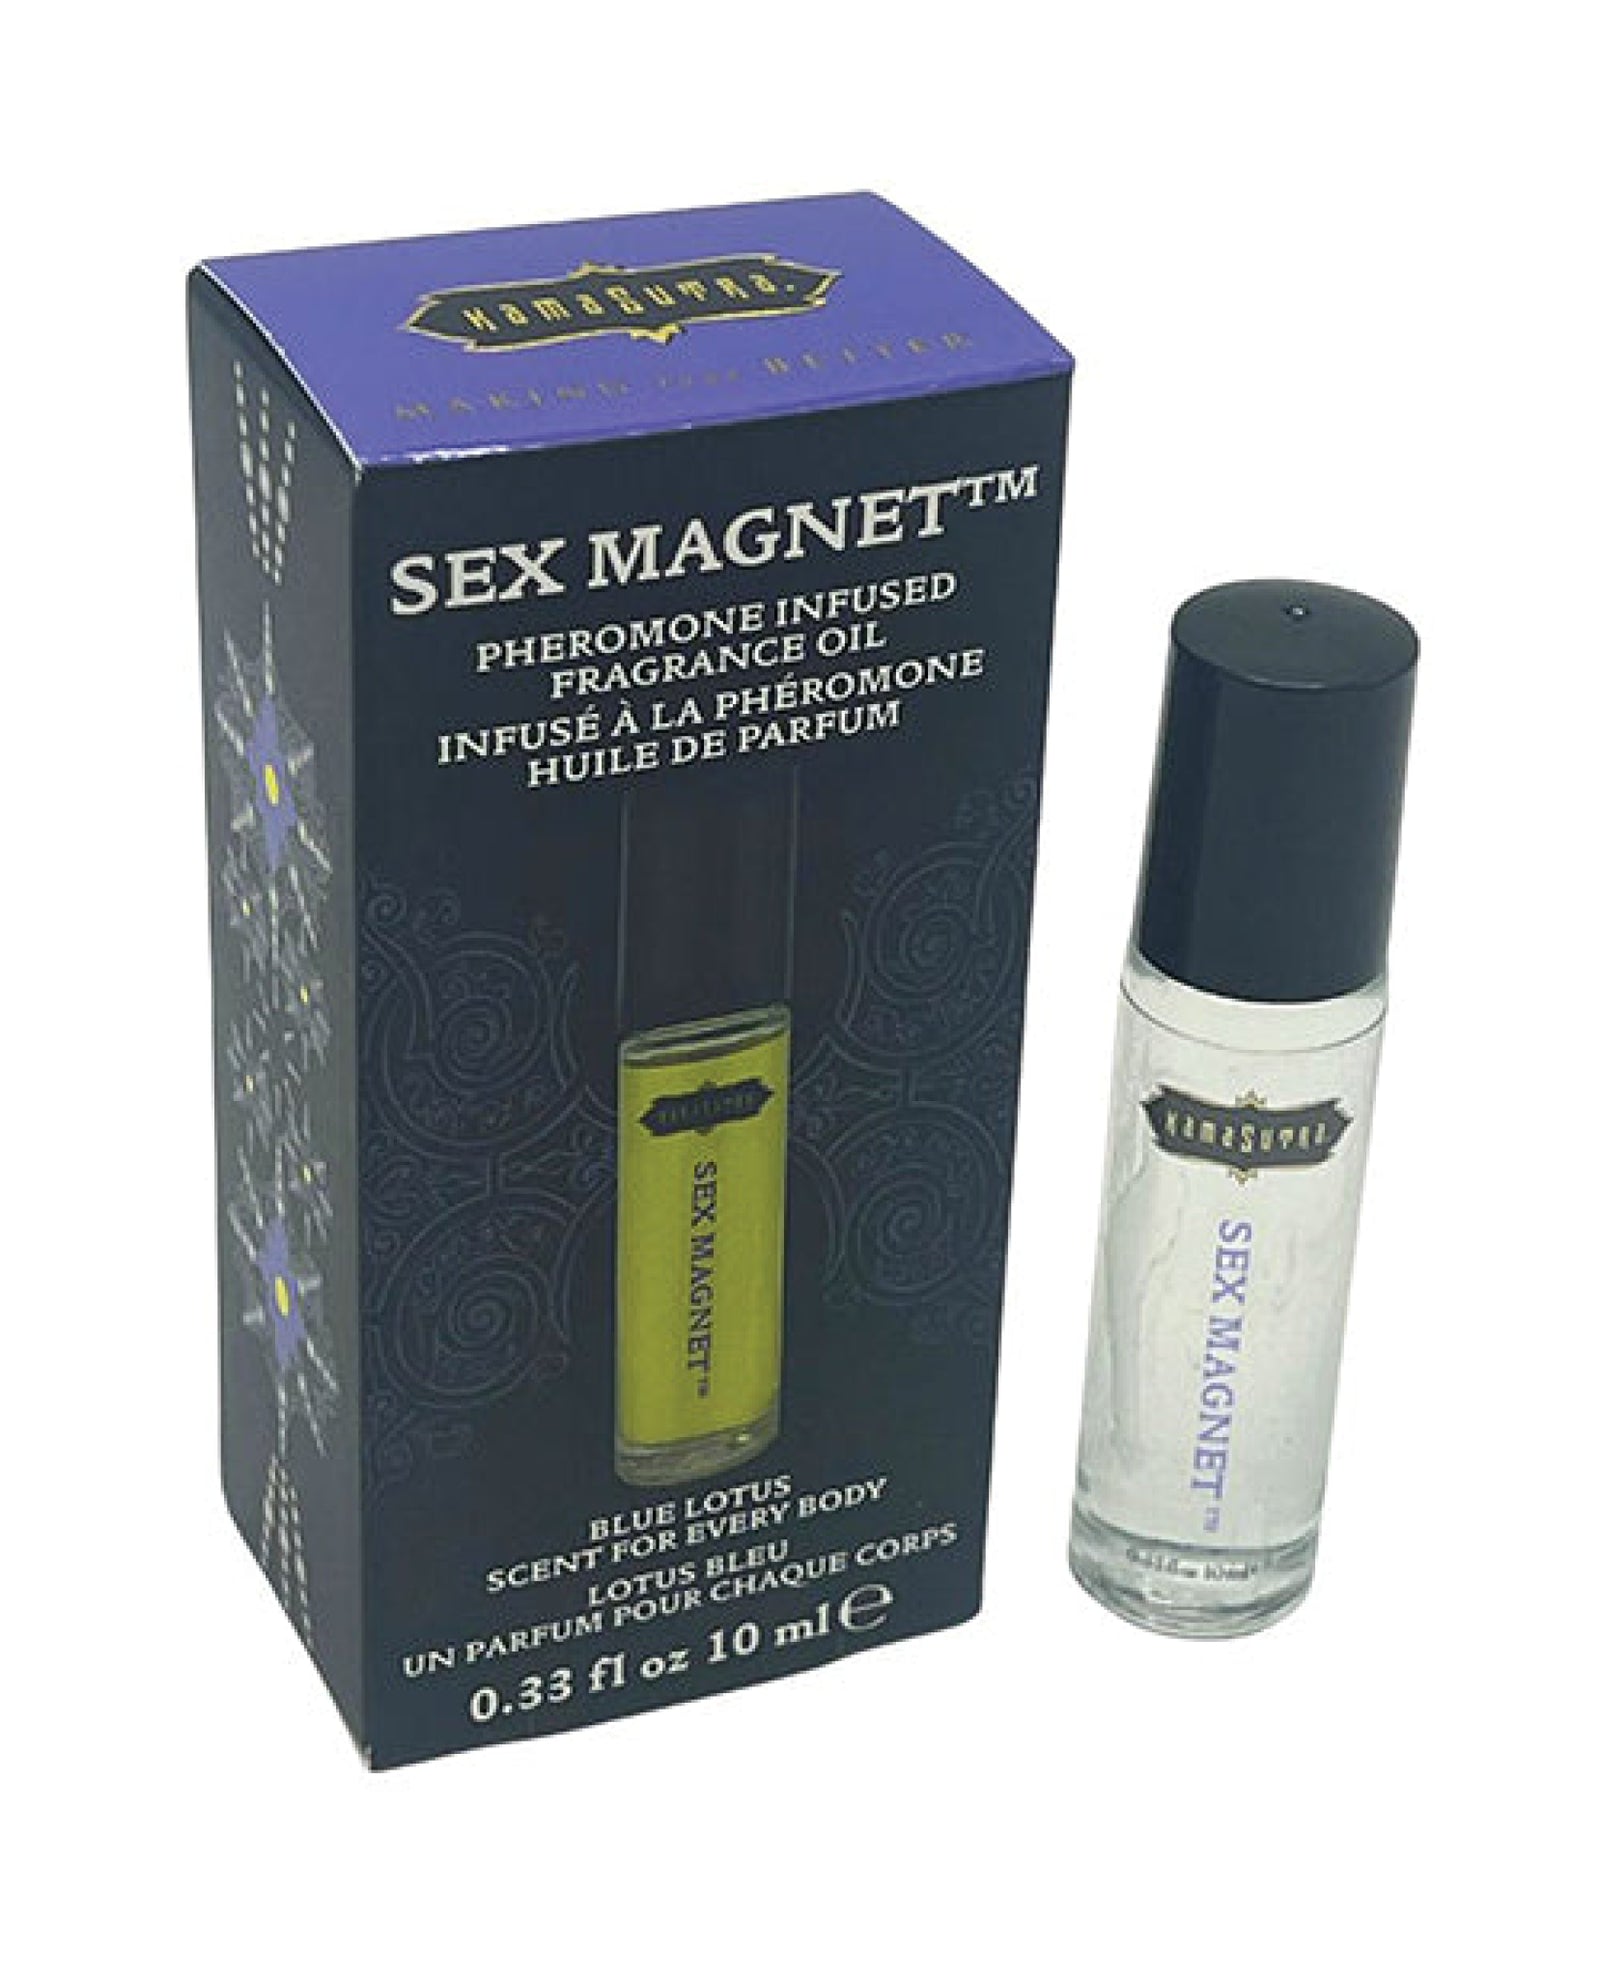 Kama Sutra Sex Magnet Pheromone Roll On Oil - Blue Lotus Kama Sutra